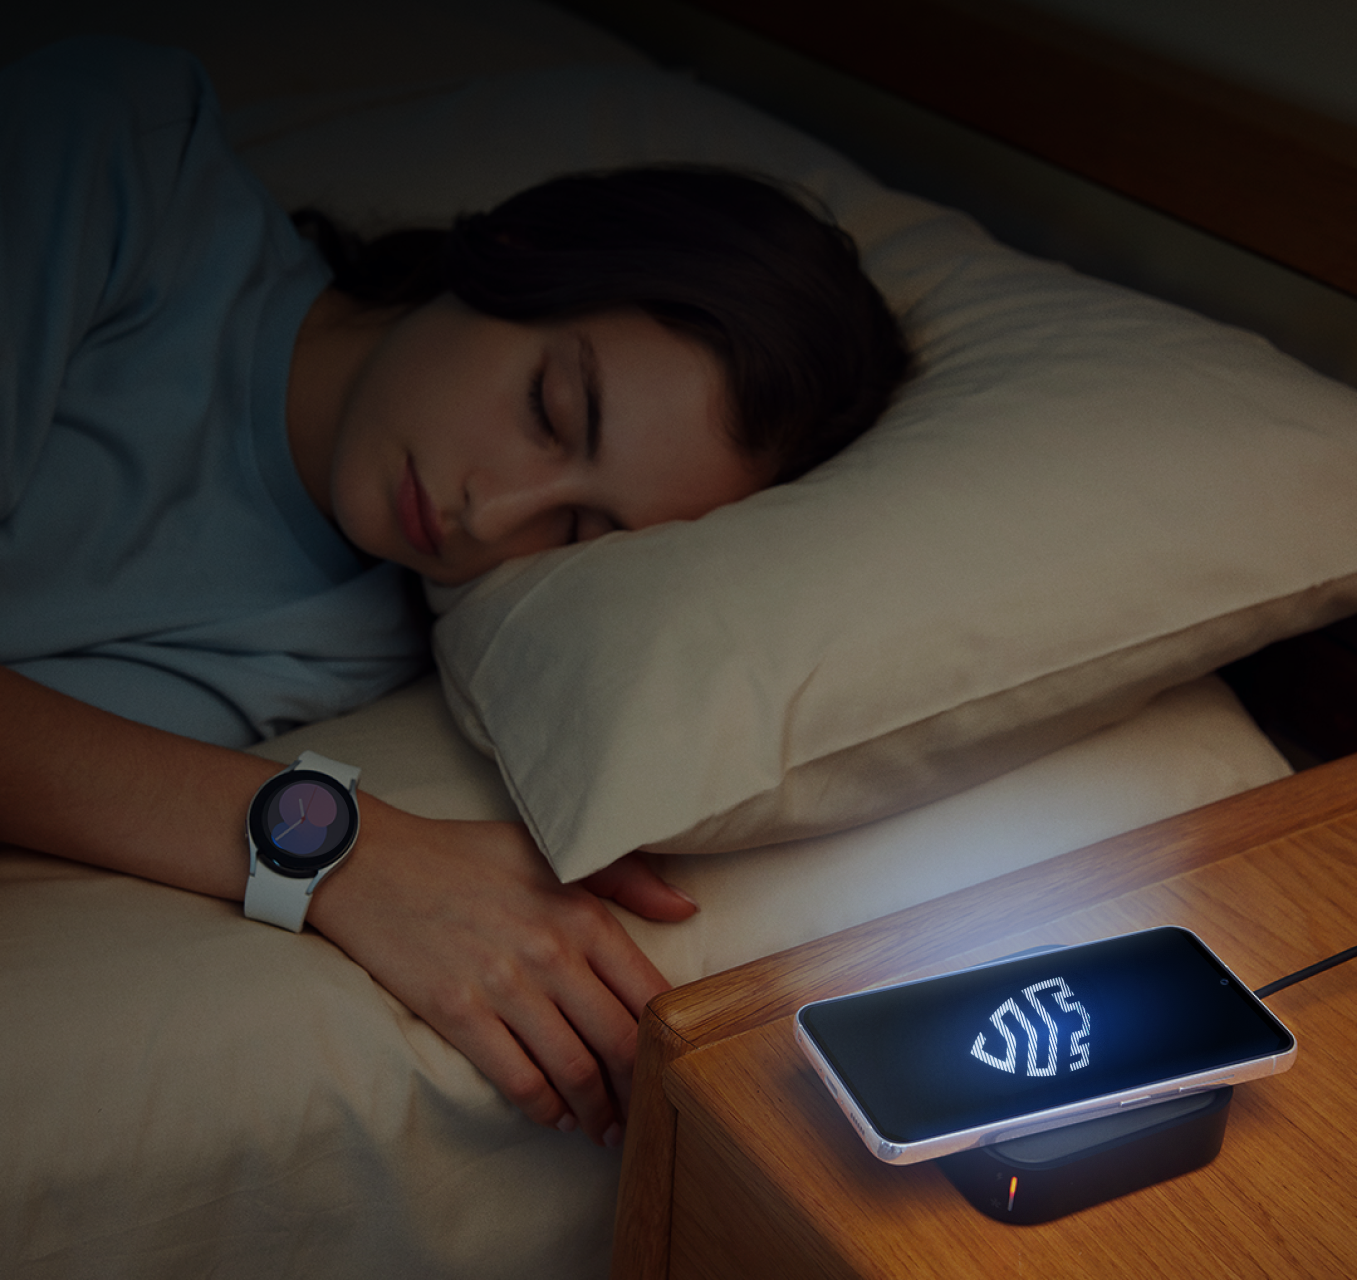 Persona durmiendo en la oscuridad junto a un dispositivo móvil Samsung que muestra un logotipo de Knox iluminado.